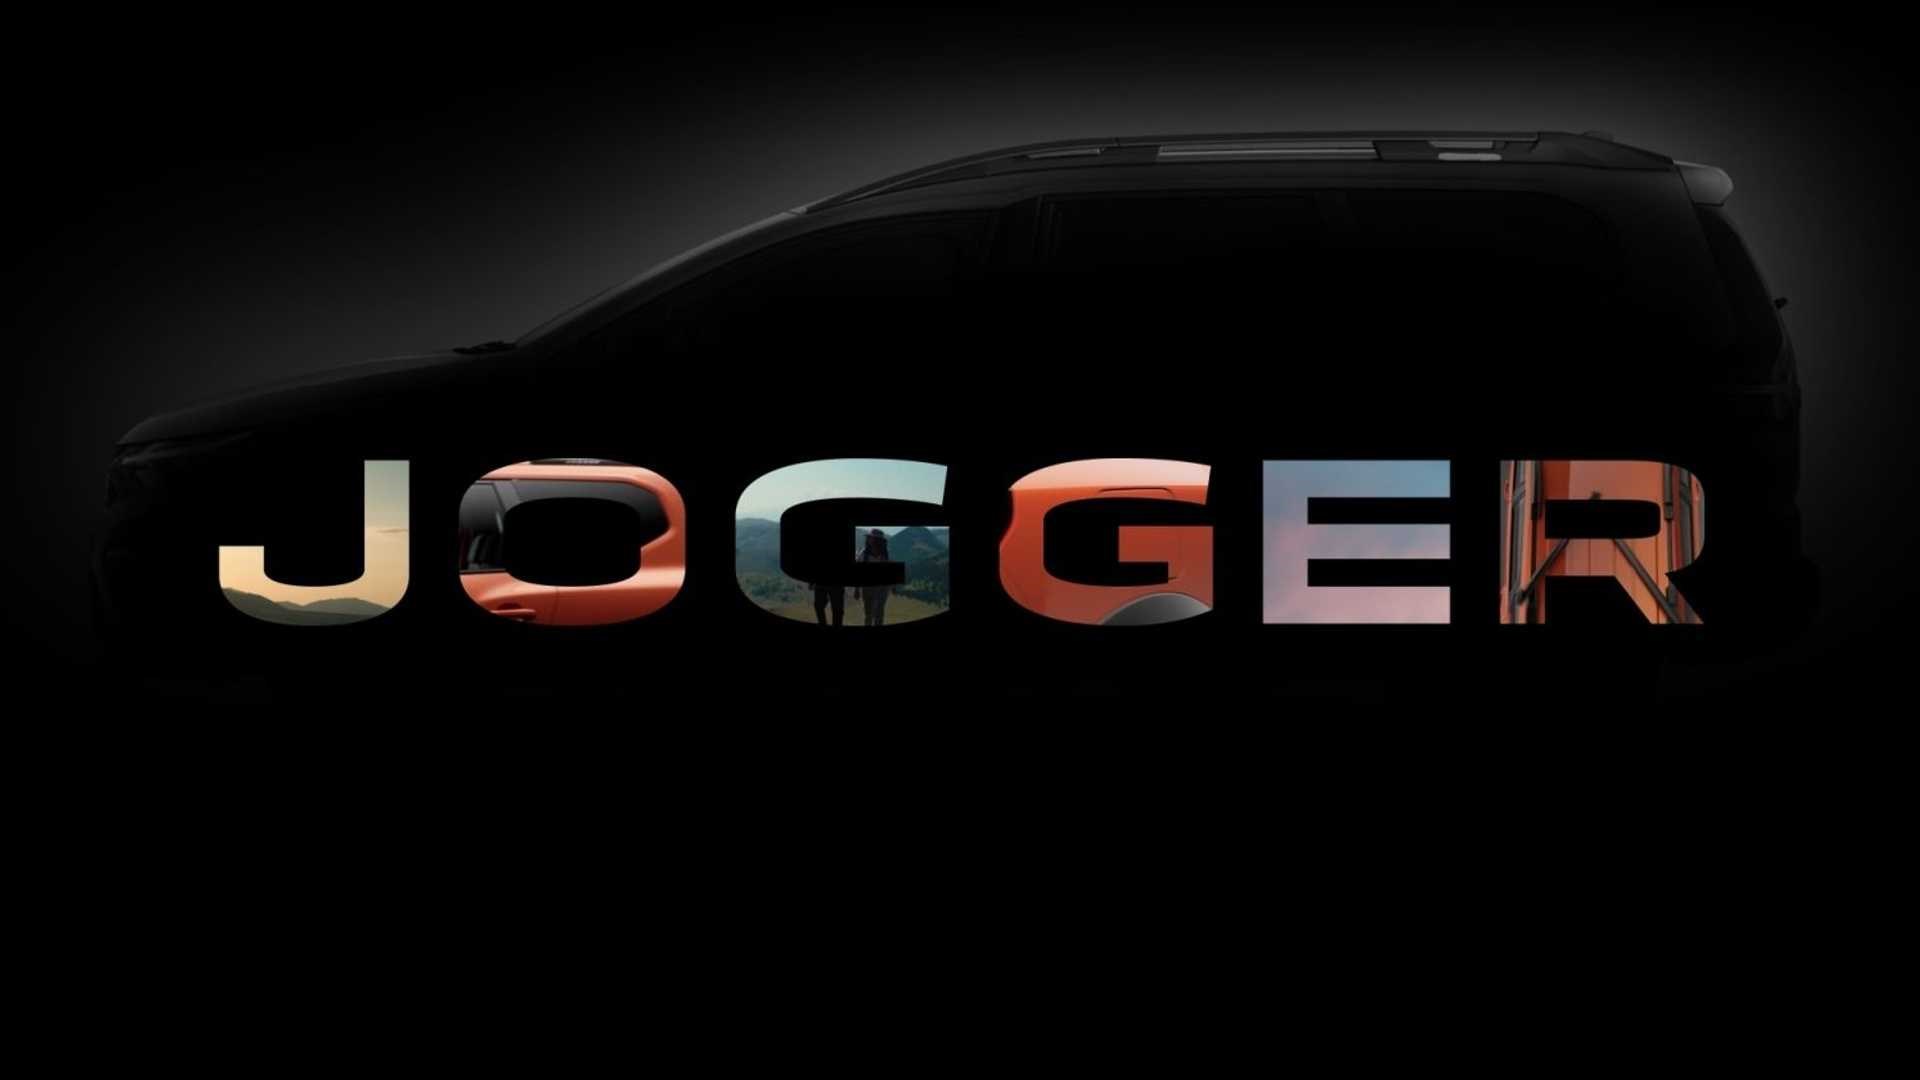 Dacia'dan 7 kişilik aile otomobili geliyor: Dacia Jogger